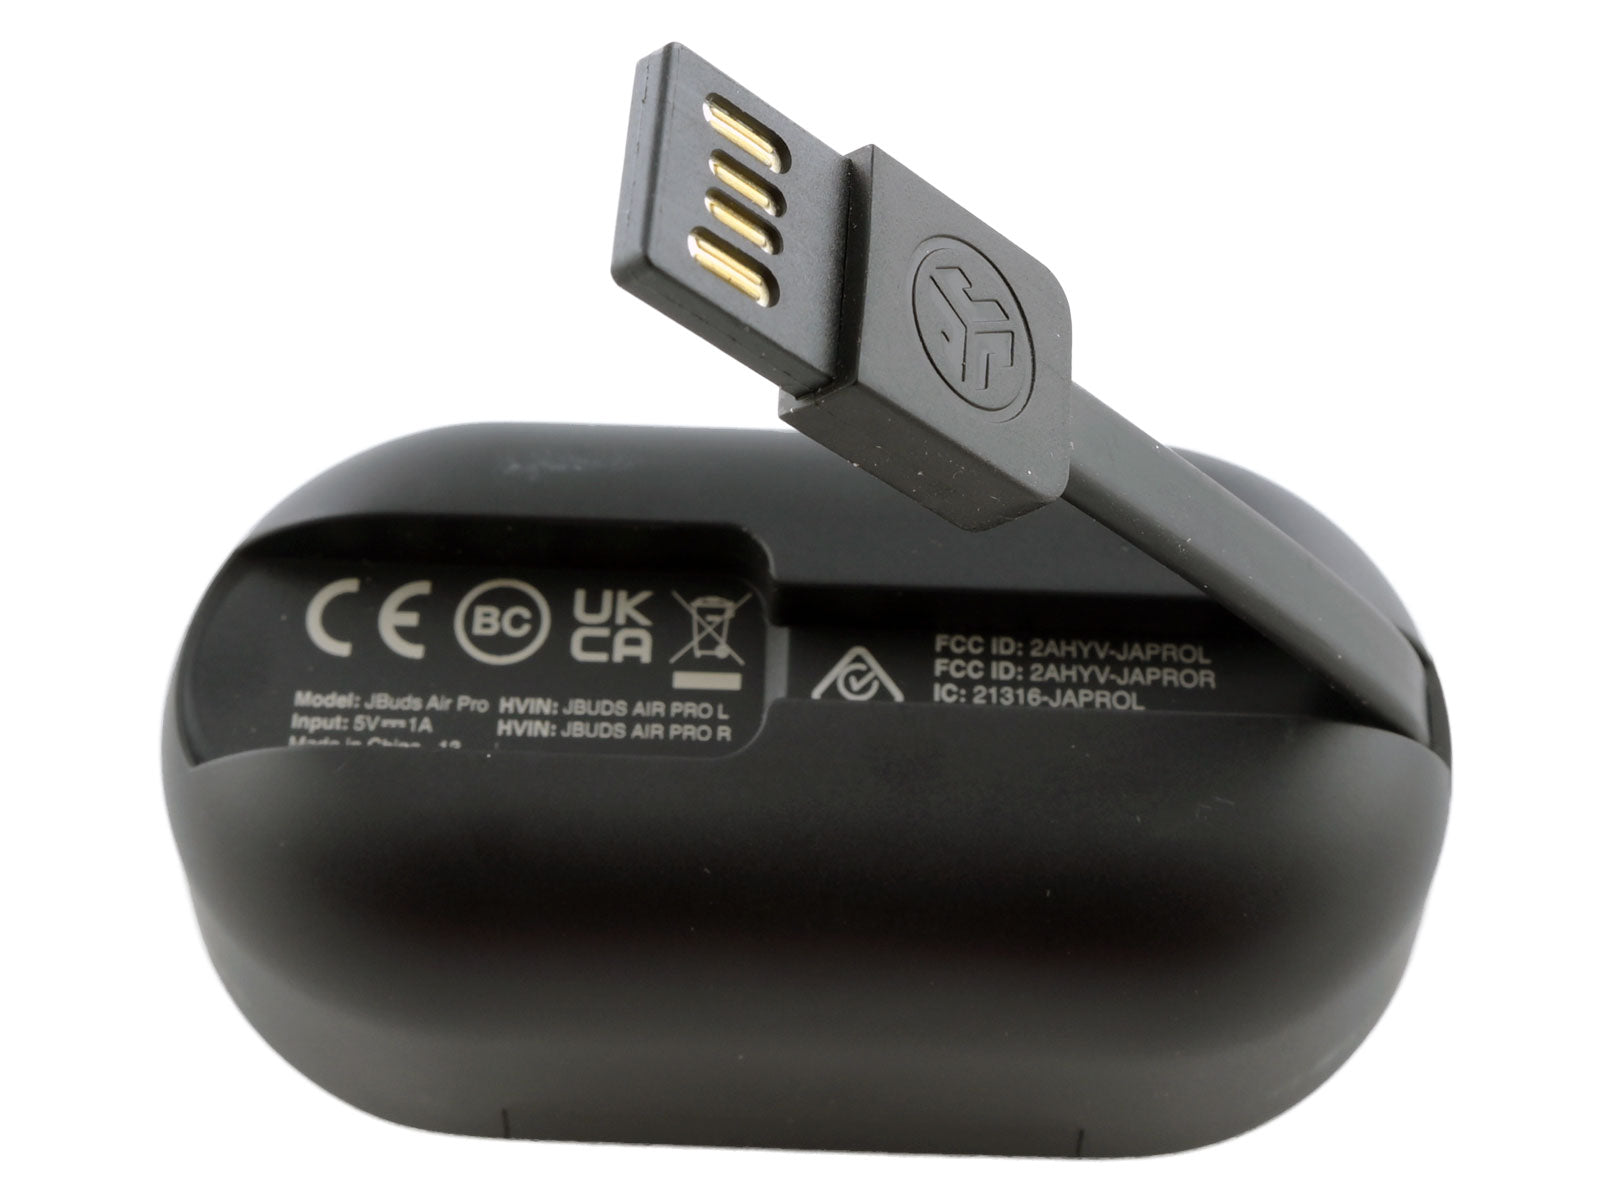 JLab JBuds Air ANC True Wireless Earbuds In-Ear Kopfhörer Ein schwarzes Ladeetui mit integriertem USB-Ladekabel liegt auf der Seite und zeigt verschiedene Zertifizierungssymbole und Texte.